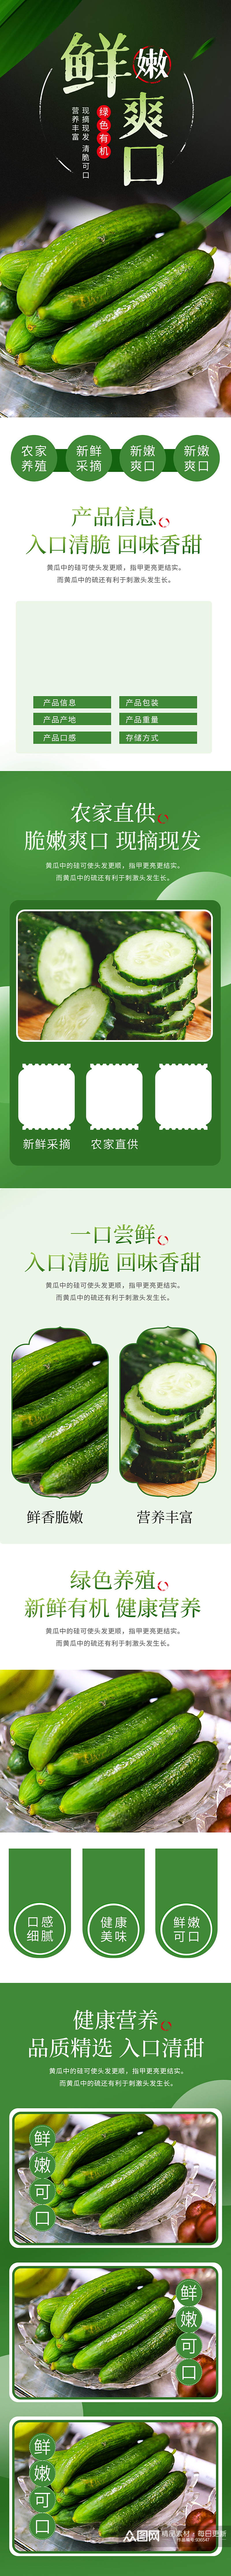 绿色食品淘宝天猫黄瓜蔬菜详情页素材